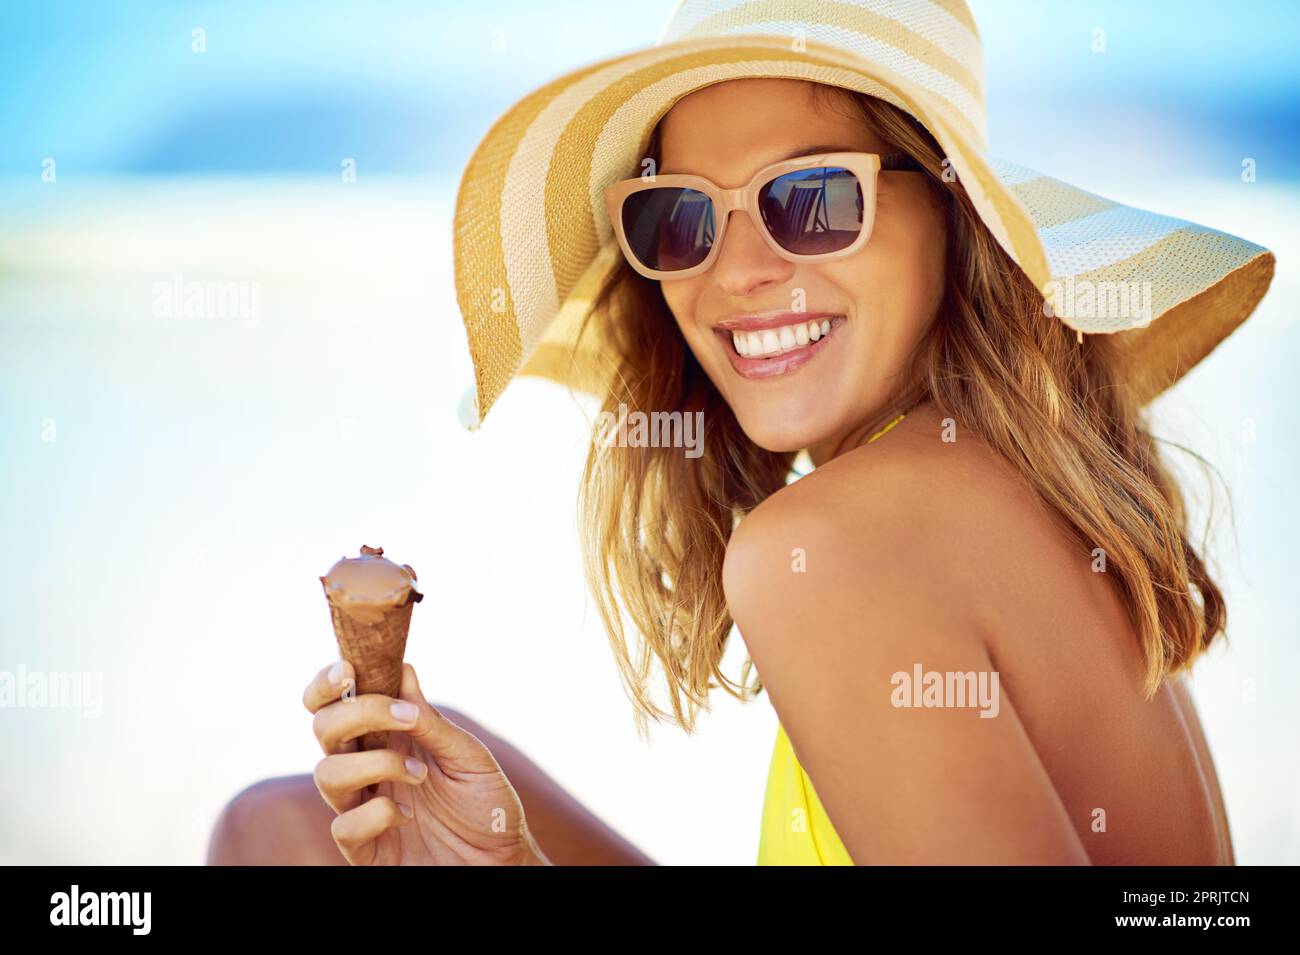 Abkühlung an einem heißen Tag. Porträt einer schönen jungen Frau, die am Strand ein Eis isst. Stockfoto